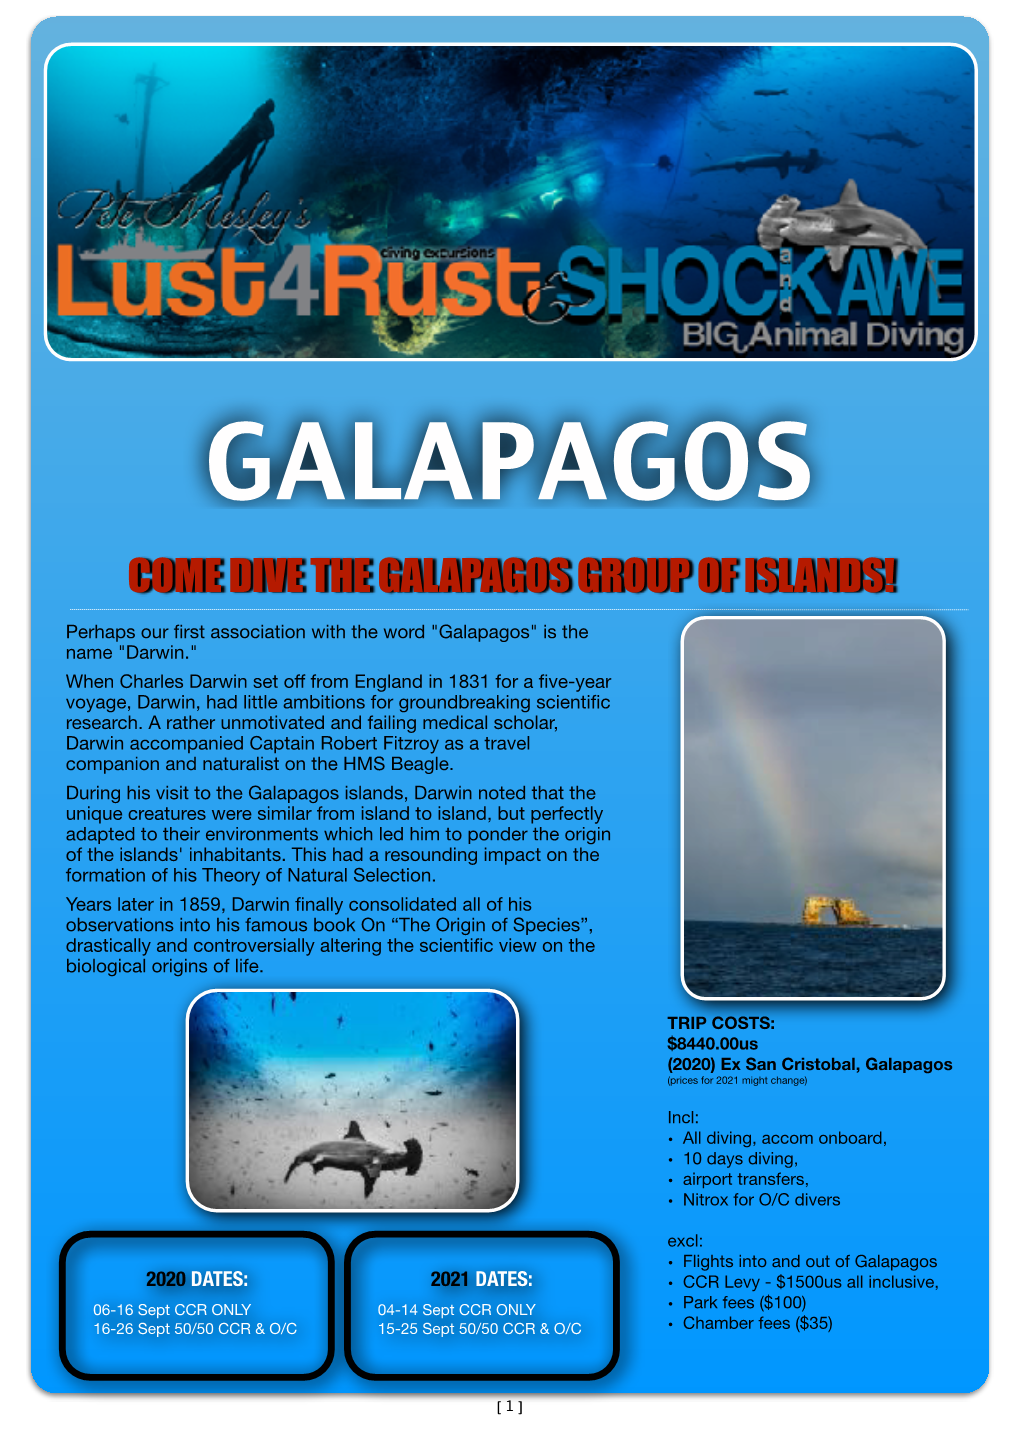 Galapagos Info